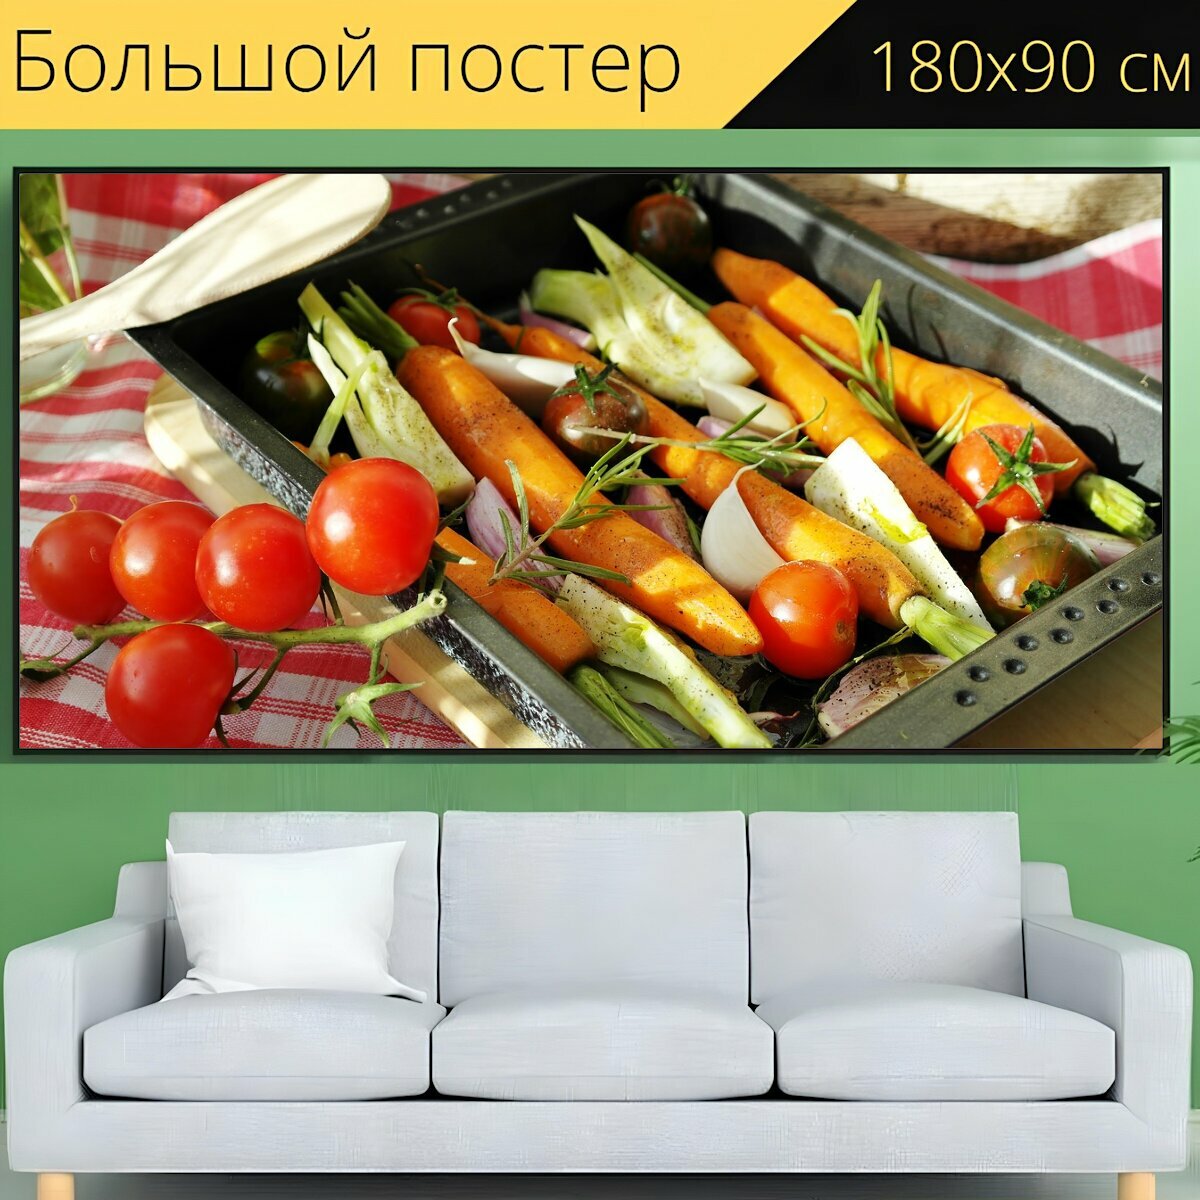 Большой постер "Овощи, овощная сковорода, гриль" 180 x 90 см. для интерьера